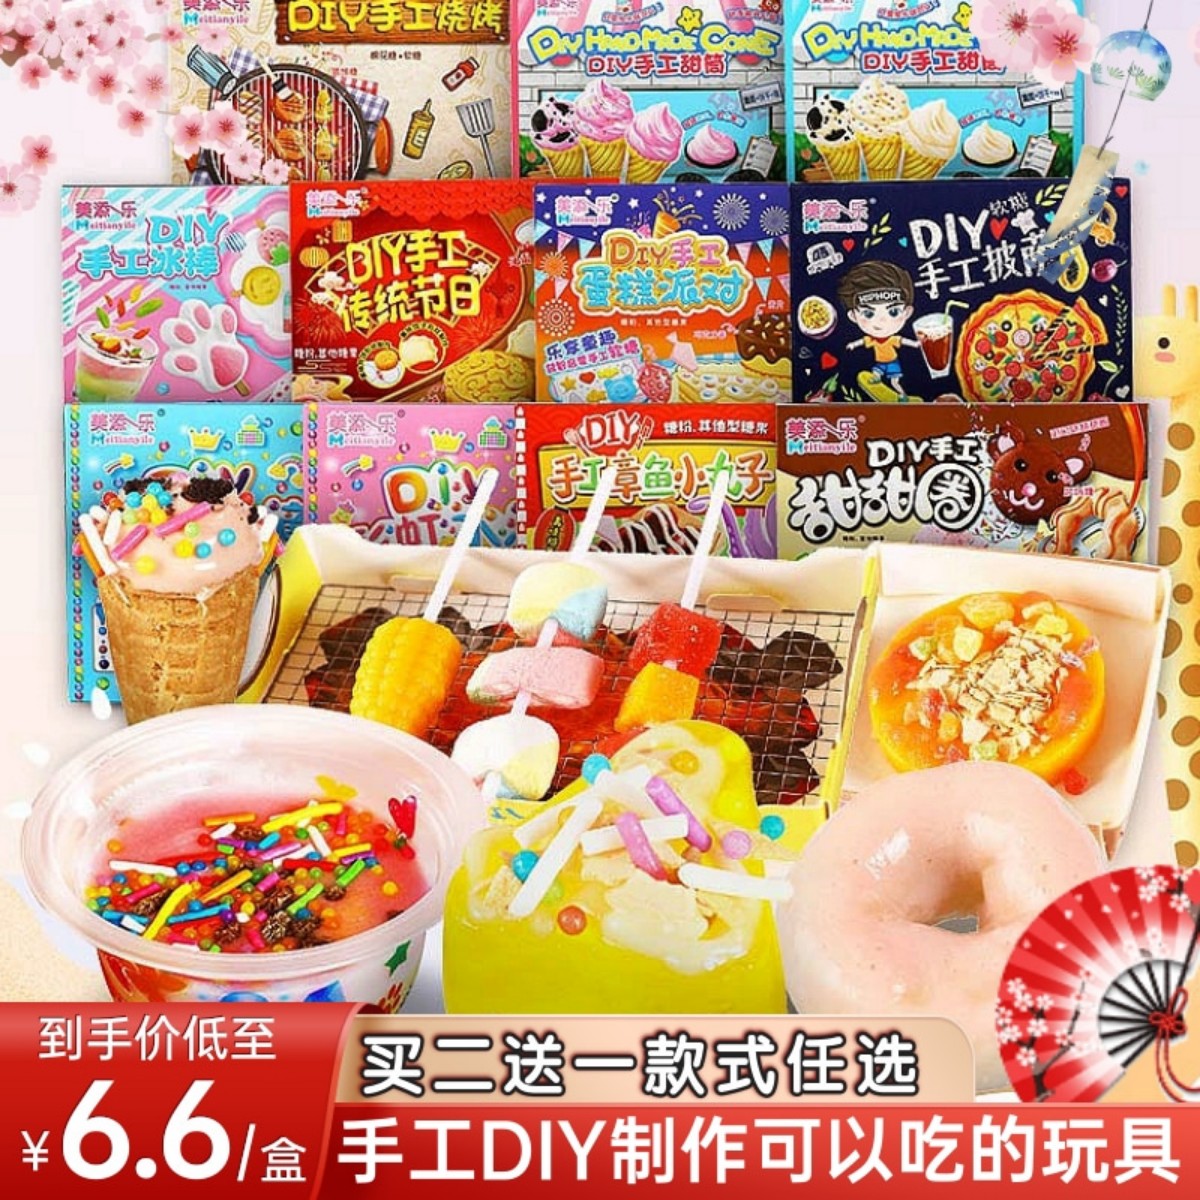 六一儿童节日本食玩可食糖果美添乐礼包中国可以吃的diy玩具零食